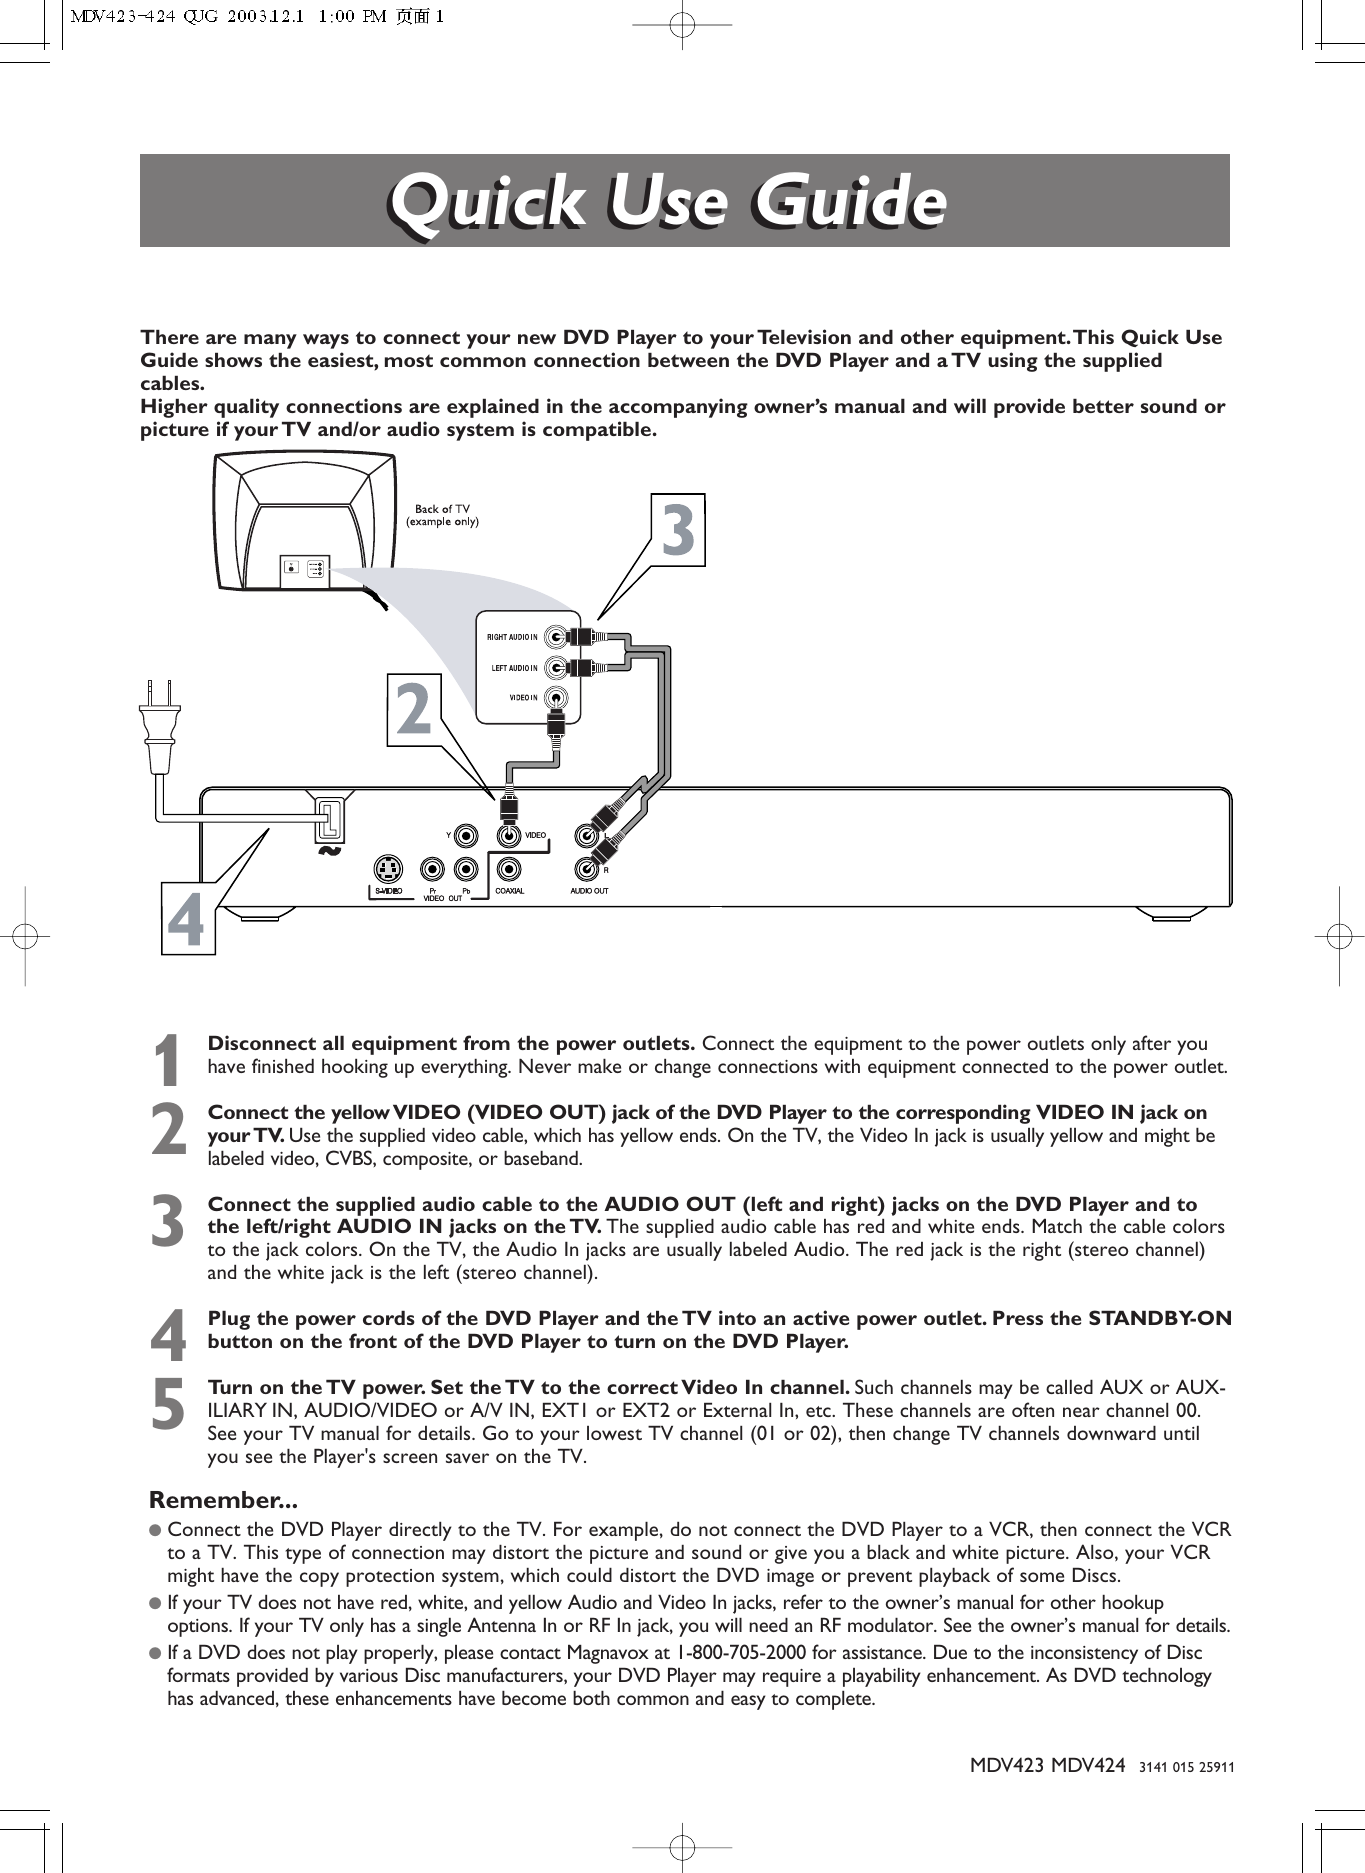 Page 1 of 2 - Magnavox Magnavox-Mdv423-Users-Manual- MDV423-424 QUG  Magnavox-mdv423-users-manual